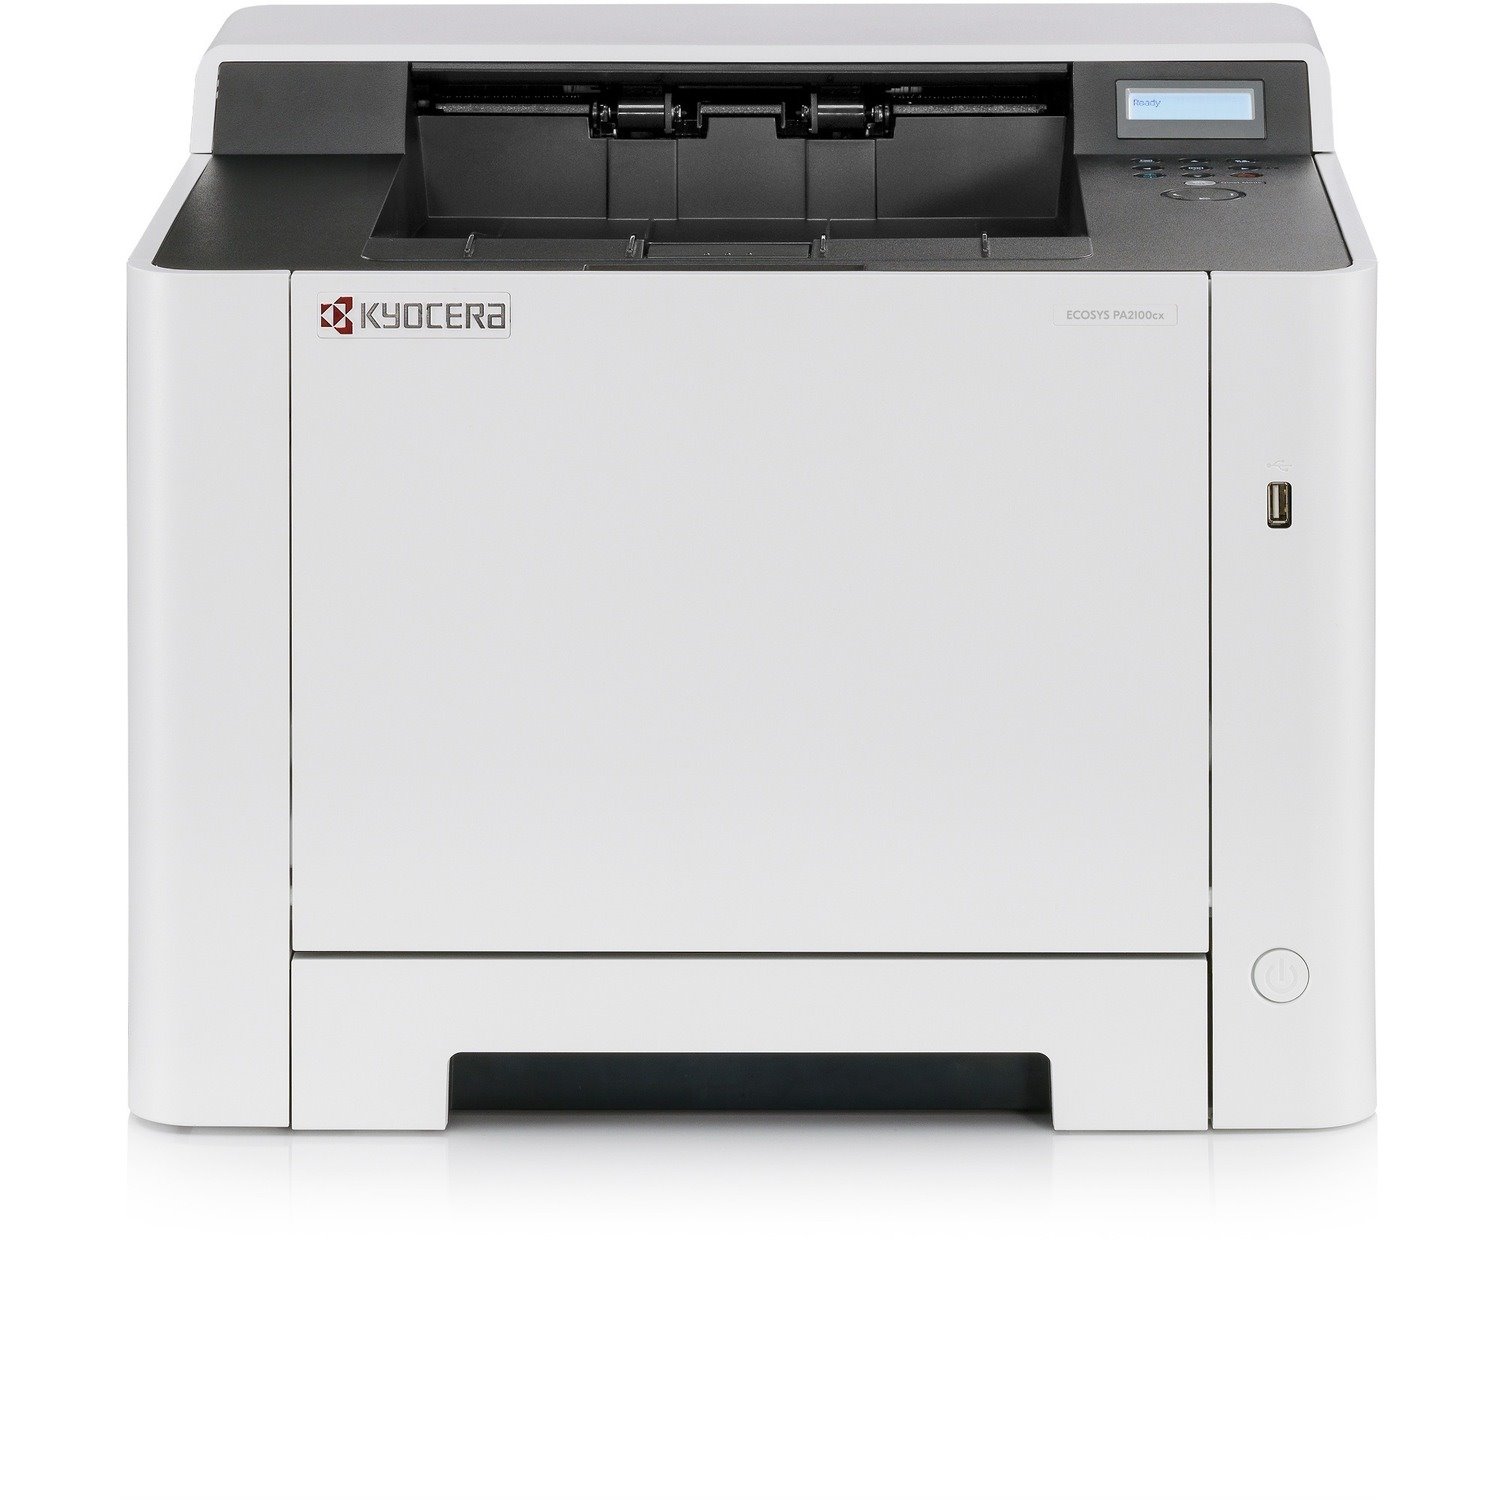 Kyocera Ecosys PA2100cx Desktop Laser Printer - Colour